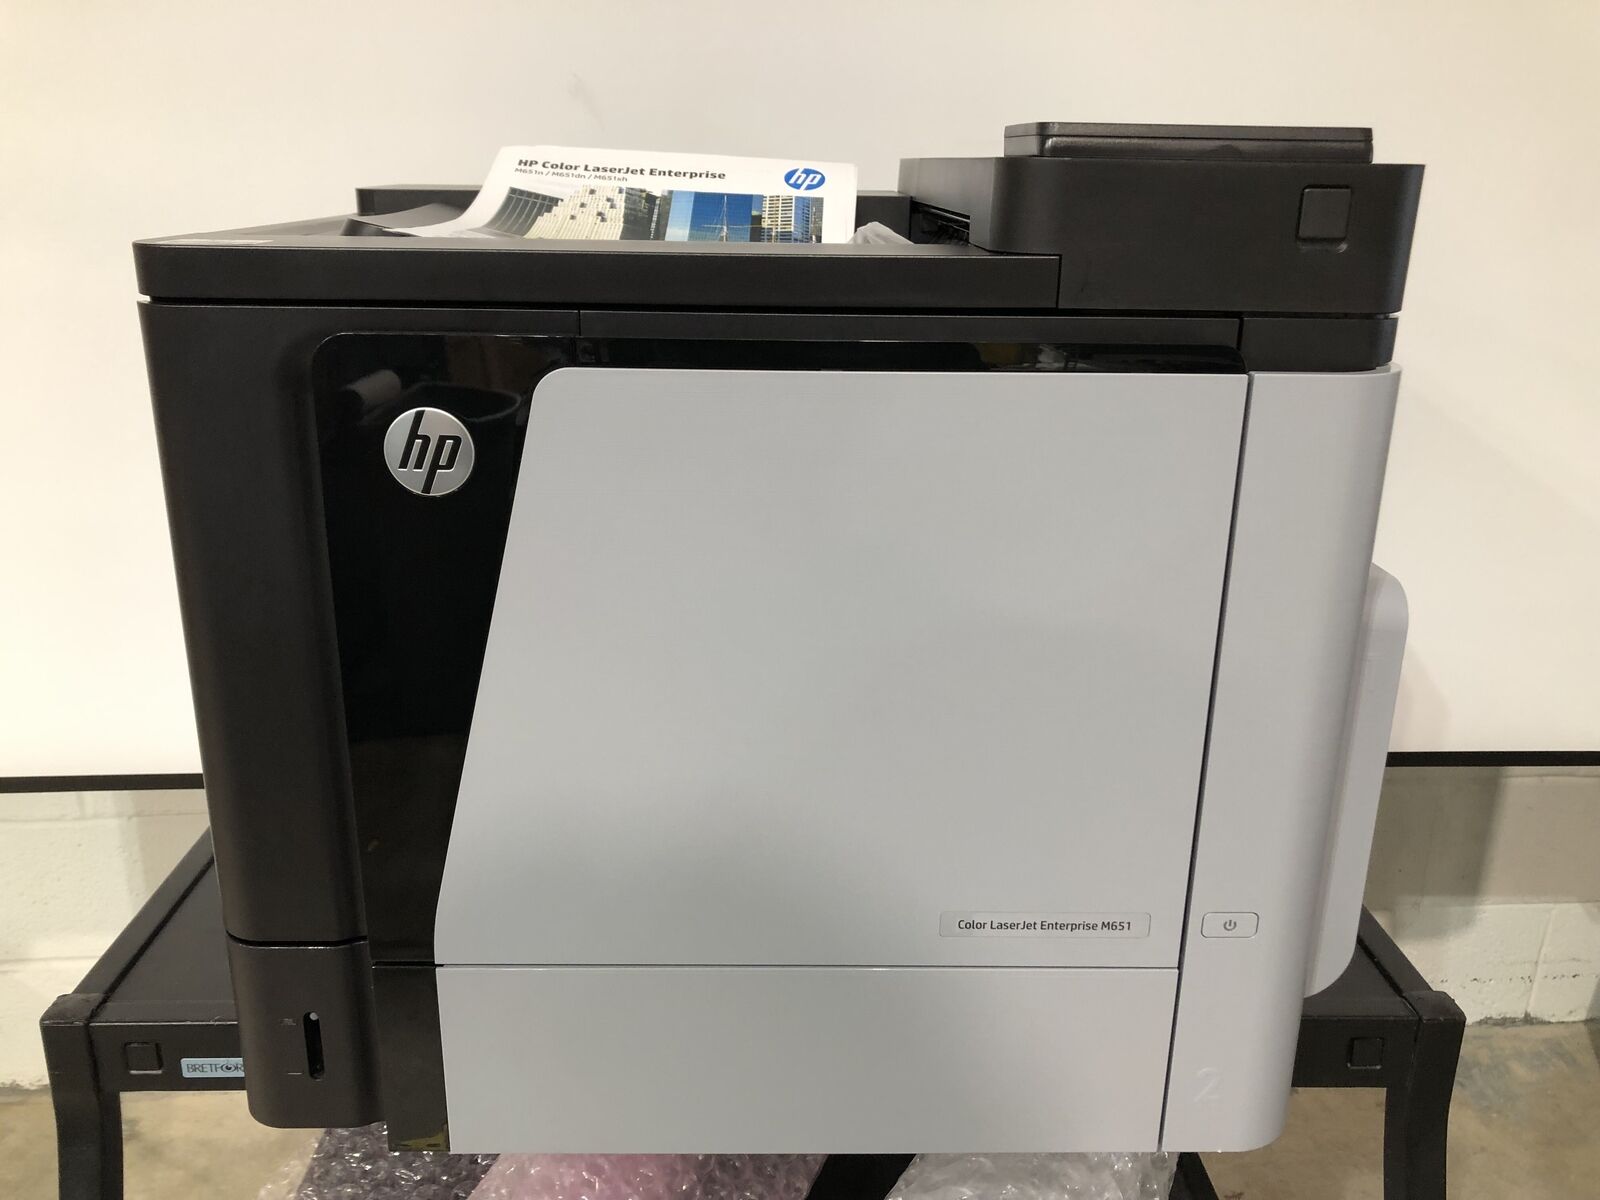 HP Color LaserJet Enterprise M651 Workgroup Laser Printer with 119K Pgs TESTED